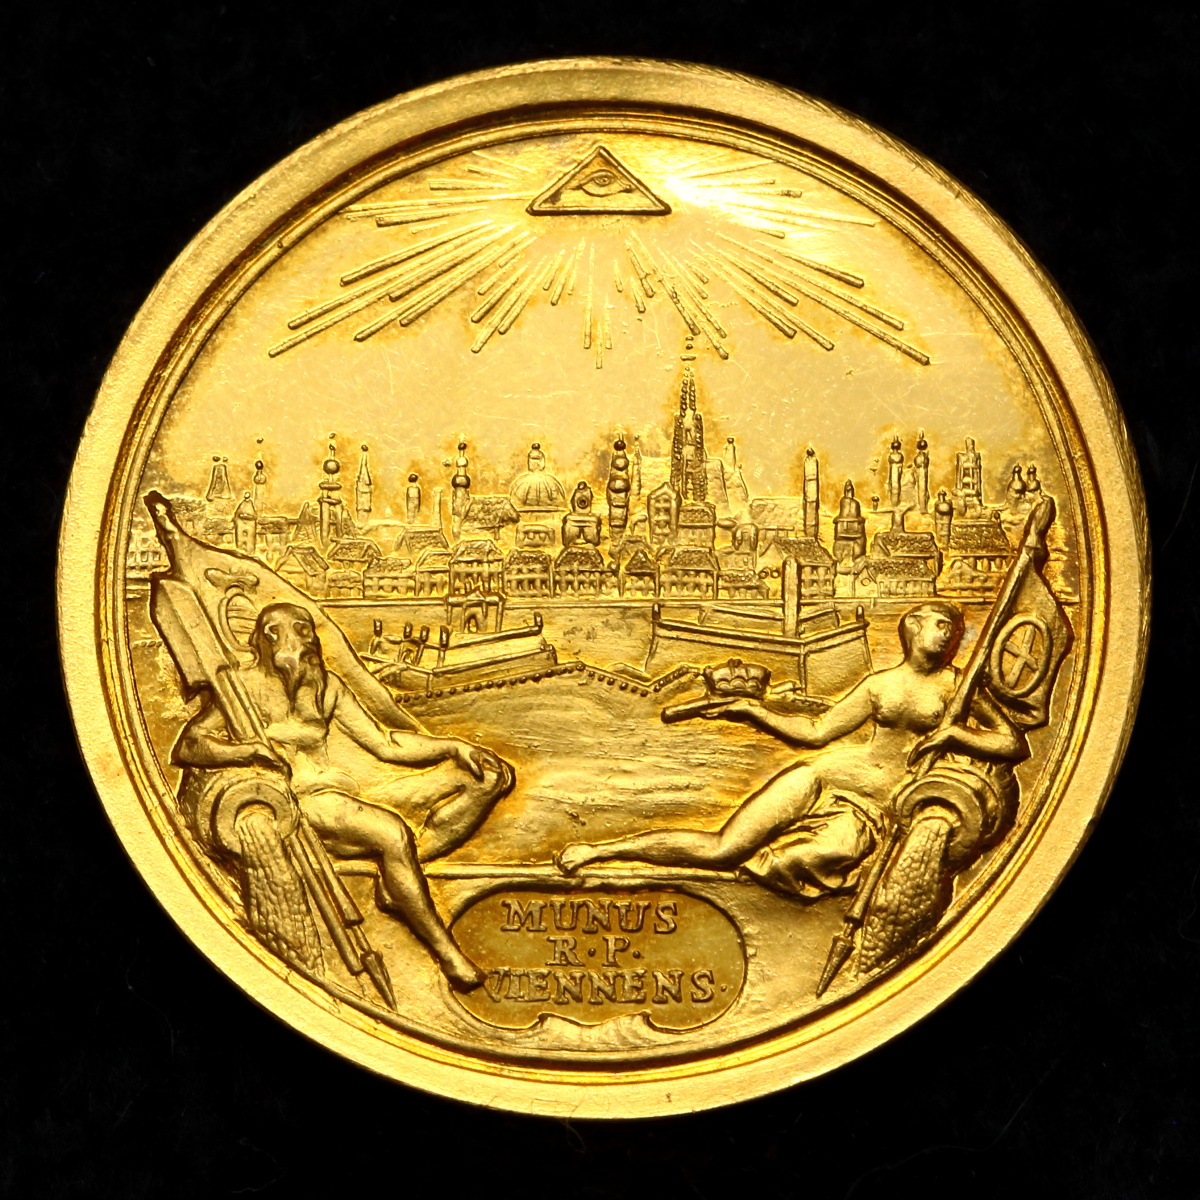 フリーメイソン コイン 神が見通す目 を持つという意味 アンティークコインで資産防衛 ユニバーサルコイン